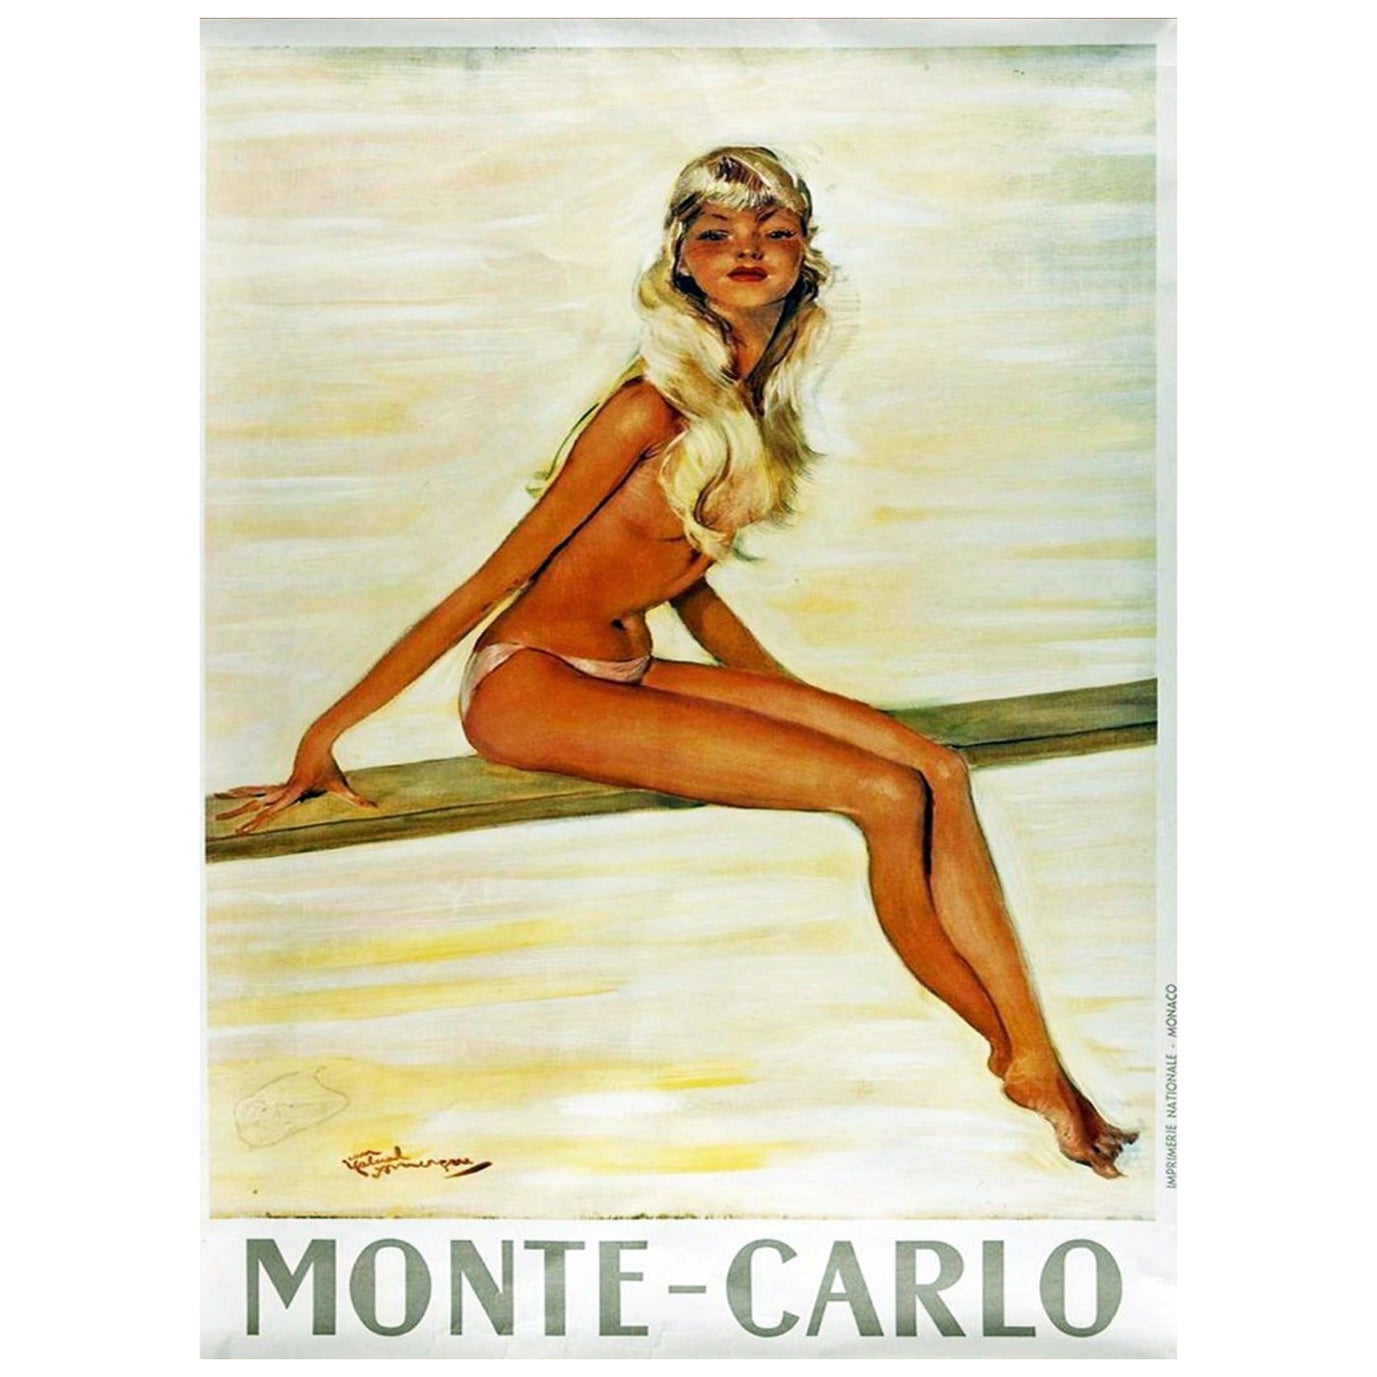 1950 Monte-Carlo Original Vintage Poster For Sale